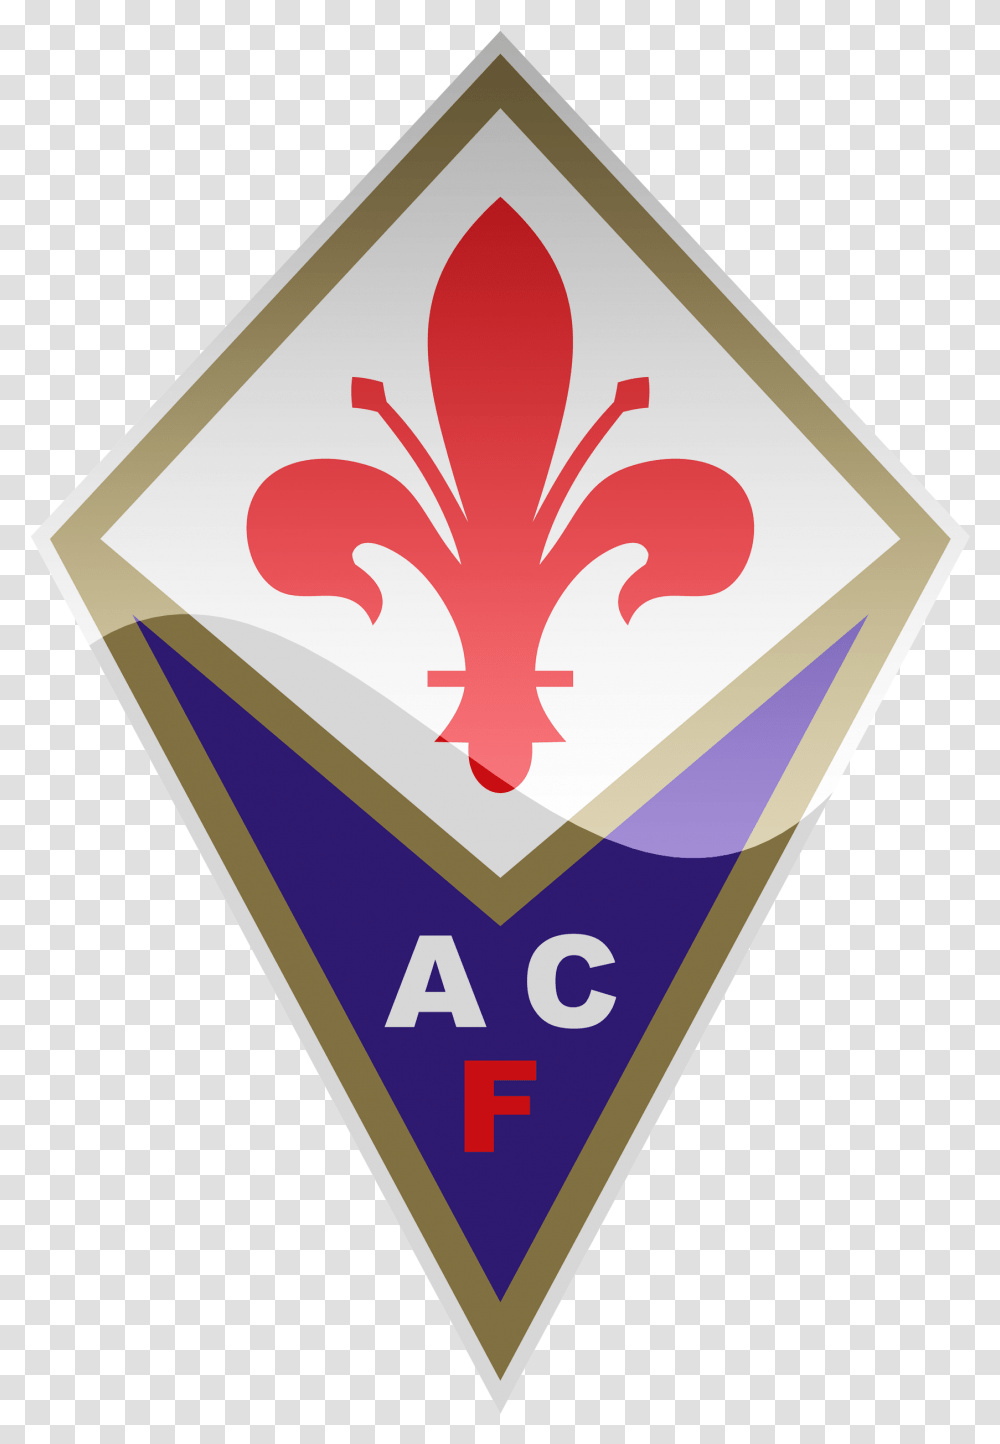 Ac Fiorentina Hd Logo Football Logos Acf Fiorentina Logo, Symbol, Trademark, Sign, Text Transparent Png